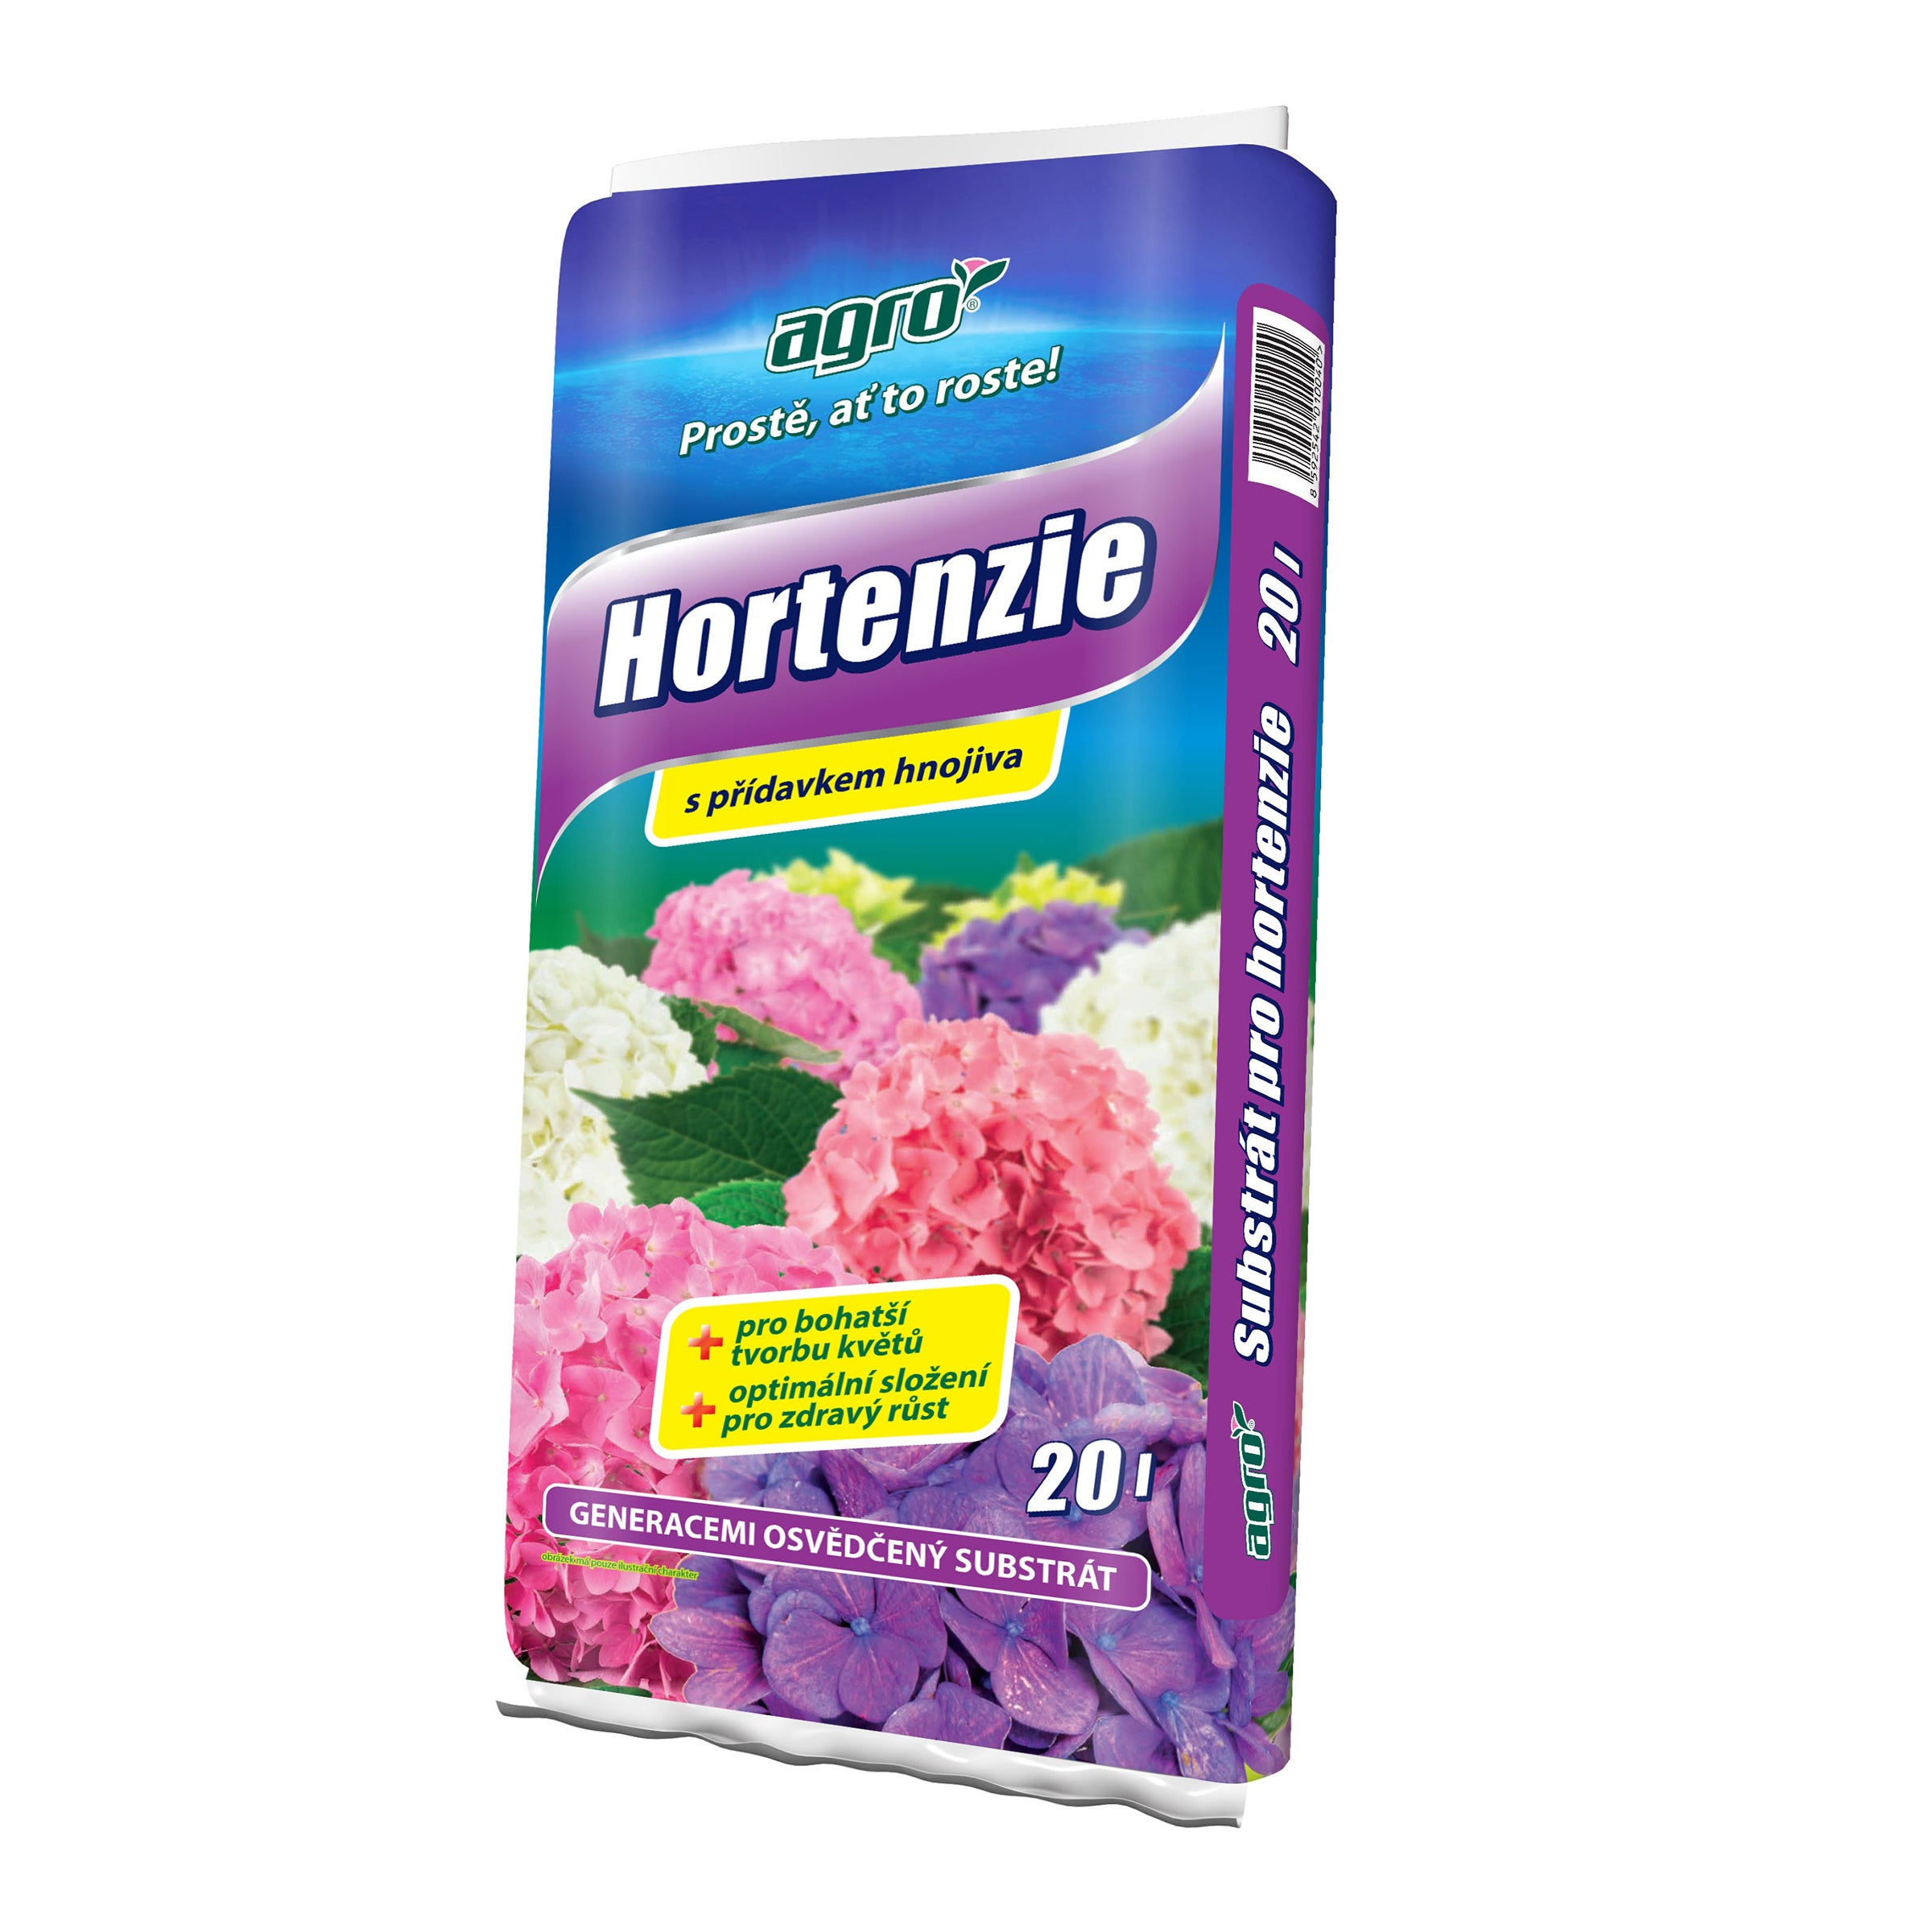 AGRO Substrát pro hortenzie s přídavkem hnojiva 20 l